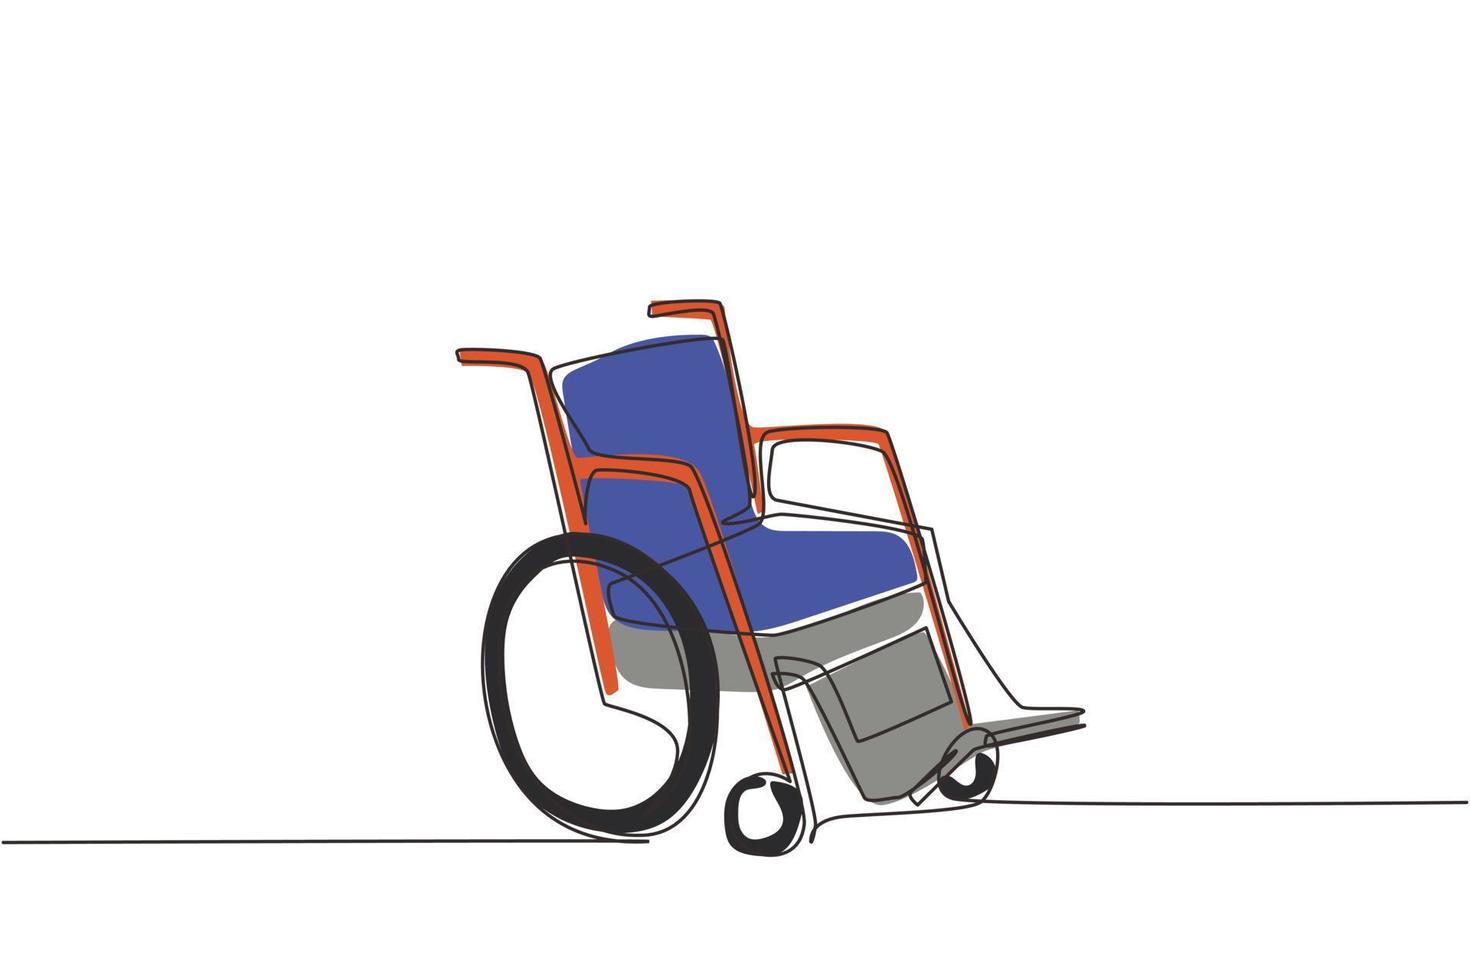 Rollstuhl mit fortlaufender einzeiliger Zeichnung für Menschen mit Behinderungen. leeres Kinderwagen-Wagengerät. hand gezeichnetes gesundheitstherapieobjekt. einzeiliges zeichnen design vektorgrafik illustration vektor